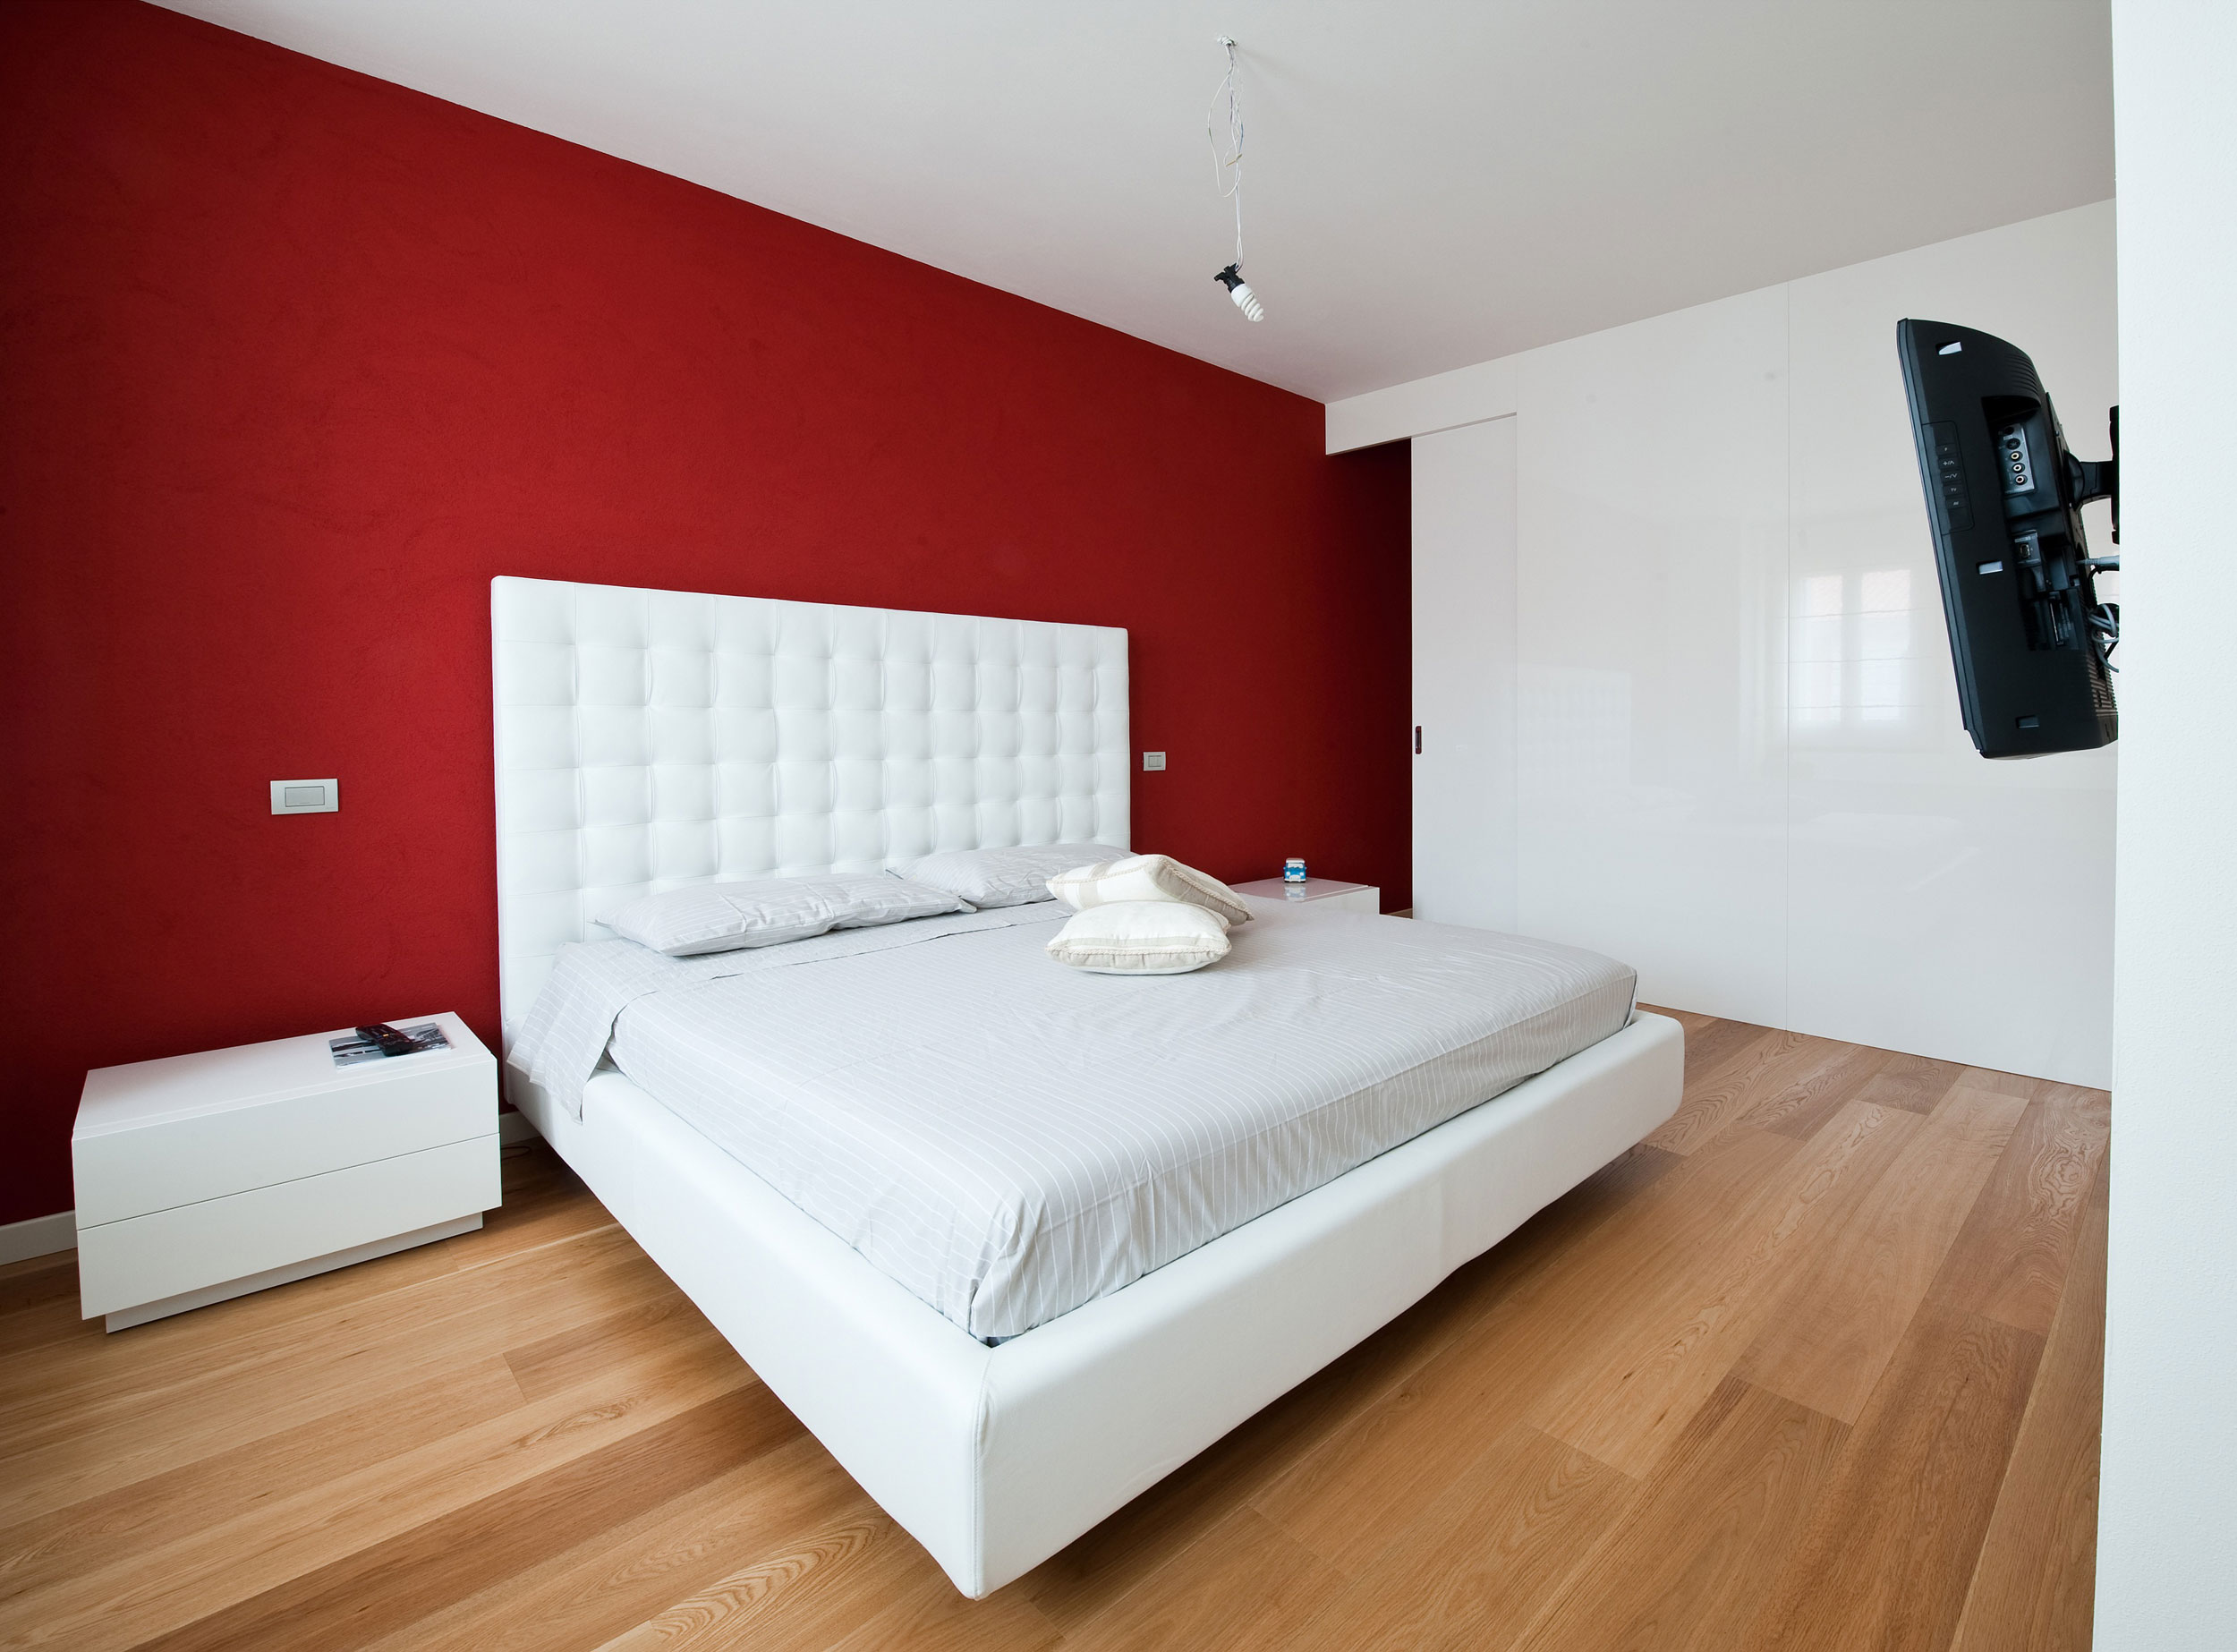 Minimalist Bedroom Interior Design Interior Design Designing Top Designers Room Ideas Designer Luxury Company Condo House Programs White Bed Interior Design